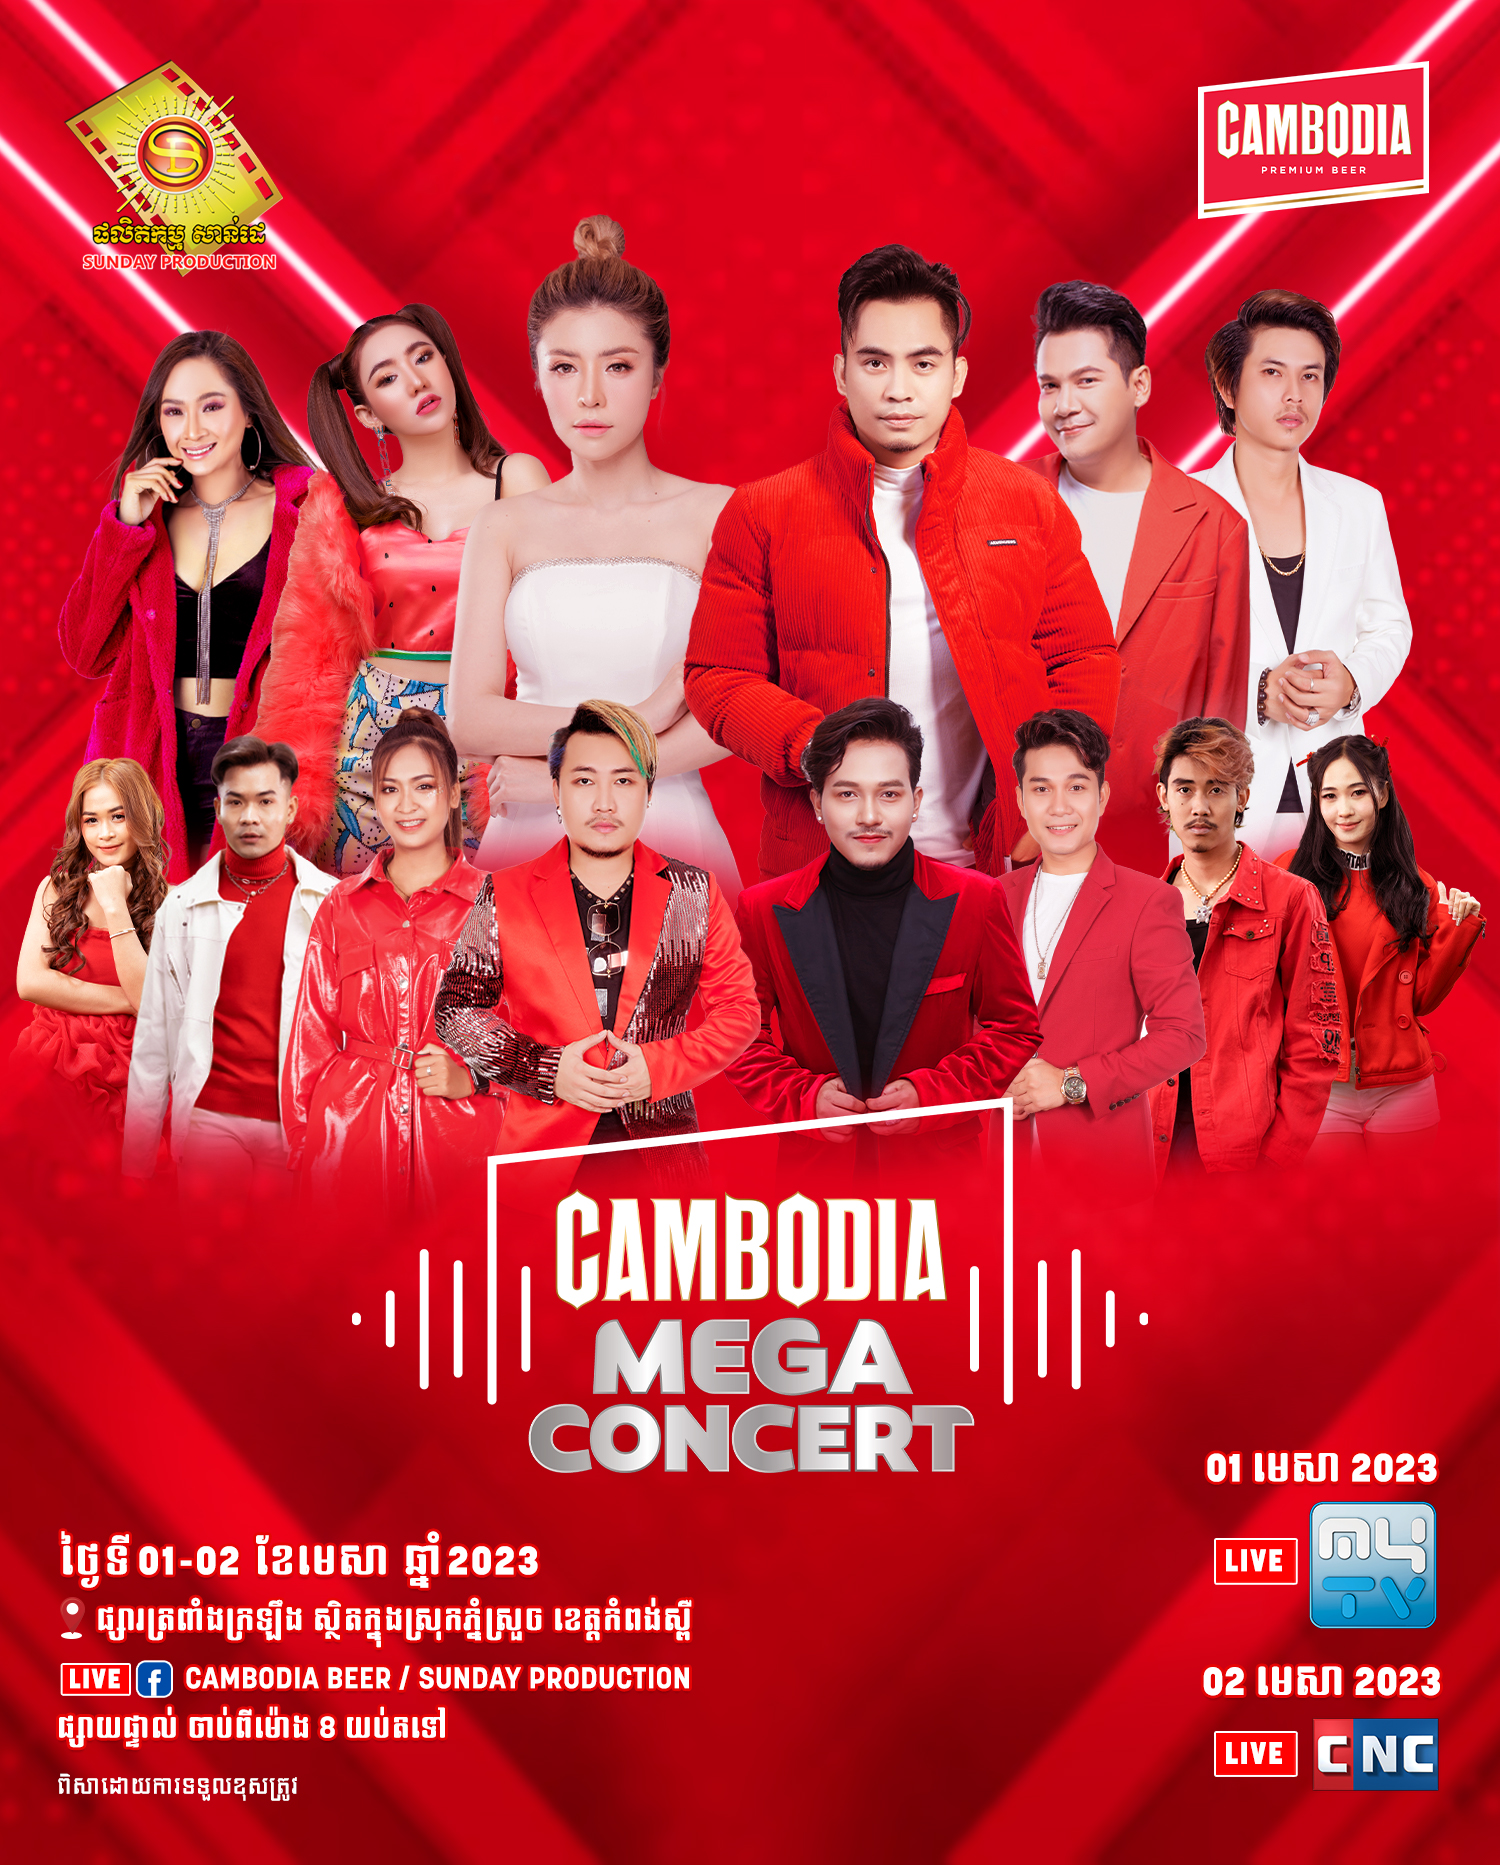 មហាព្រឹត្តិការណ៍ដ៏ធំអស្ចារ្យប្រចាំឆ្នាំ២០២៣បានមកដល់ហើយនៅក្នុងកម្មវិធី Cambodia Mega Concert!!!